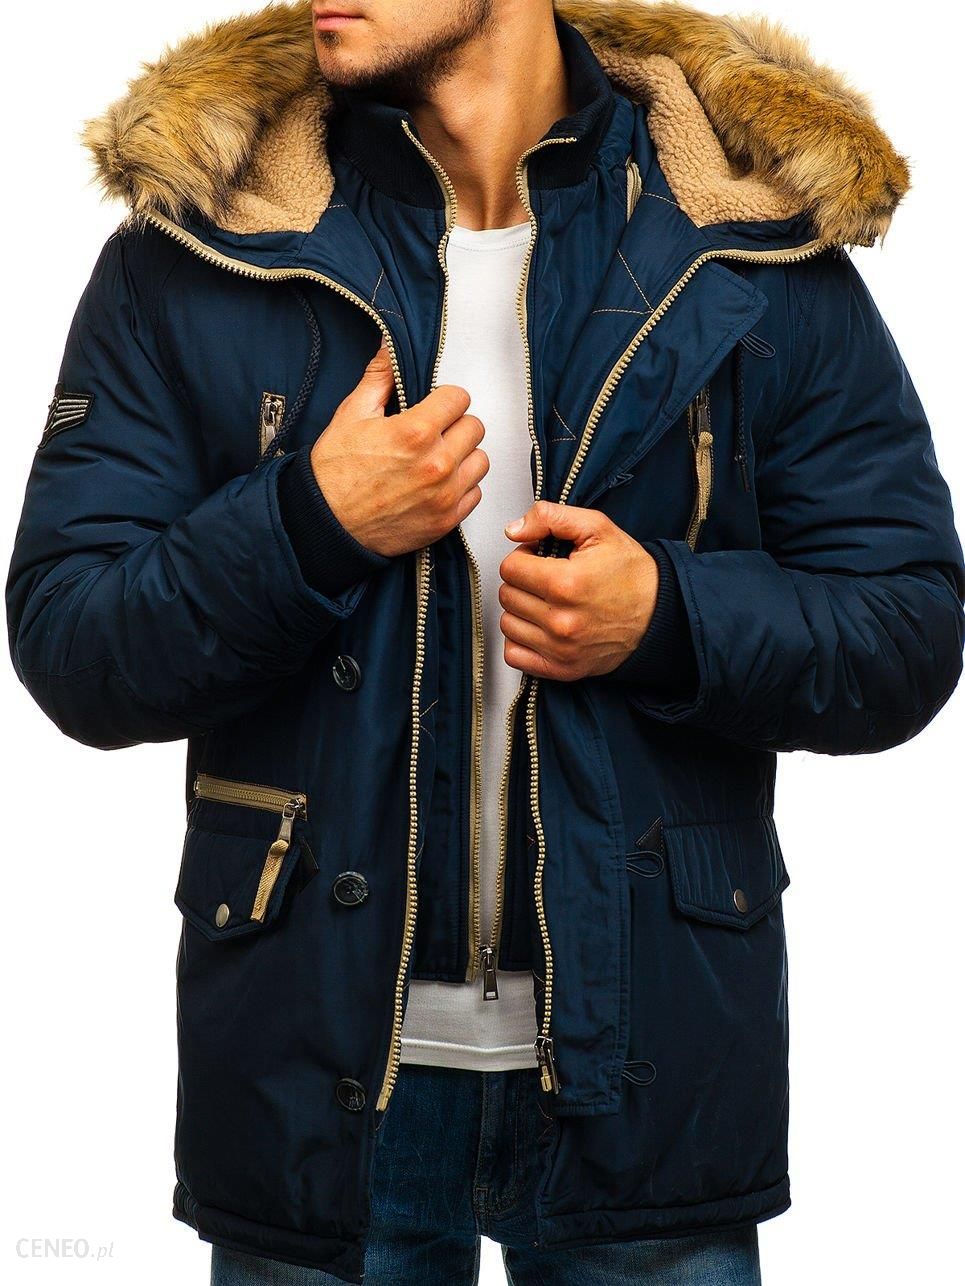 Зимняя куртка мужская производитель. Parka Kurtka мужская. Zaka Аляска мужская. Morelly куртки мужские зимние. Куртка зимняя мужская ее.00.000.46181.